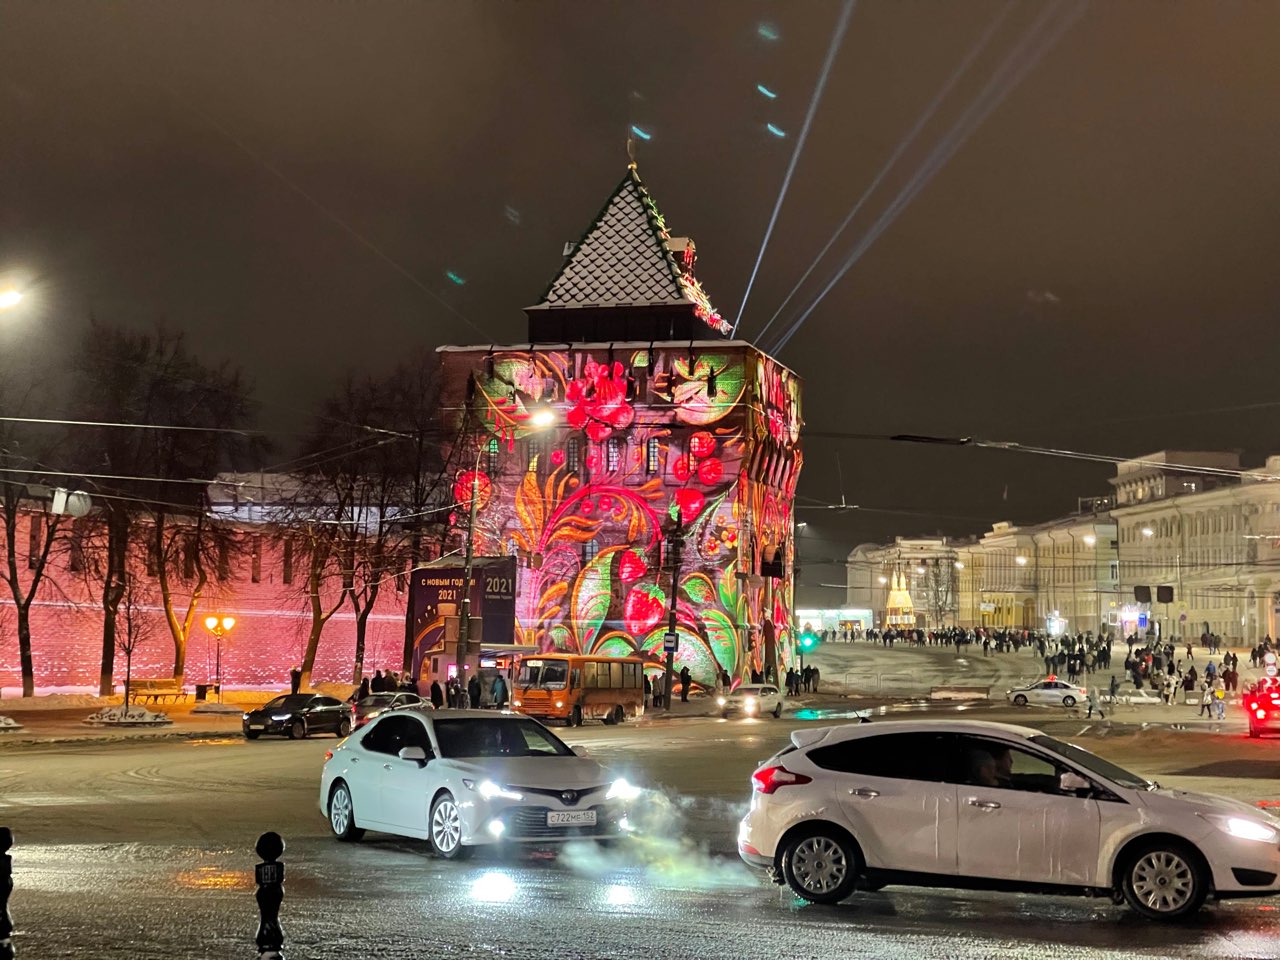 От "Волшебного леса" до праздничного экспресса: где встретить Новый год в Нижнем Новгороде - фото 2